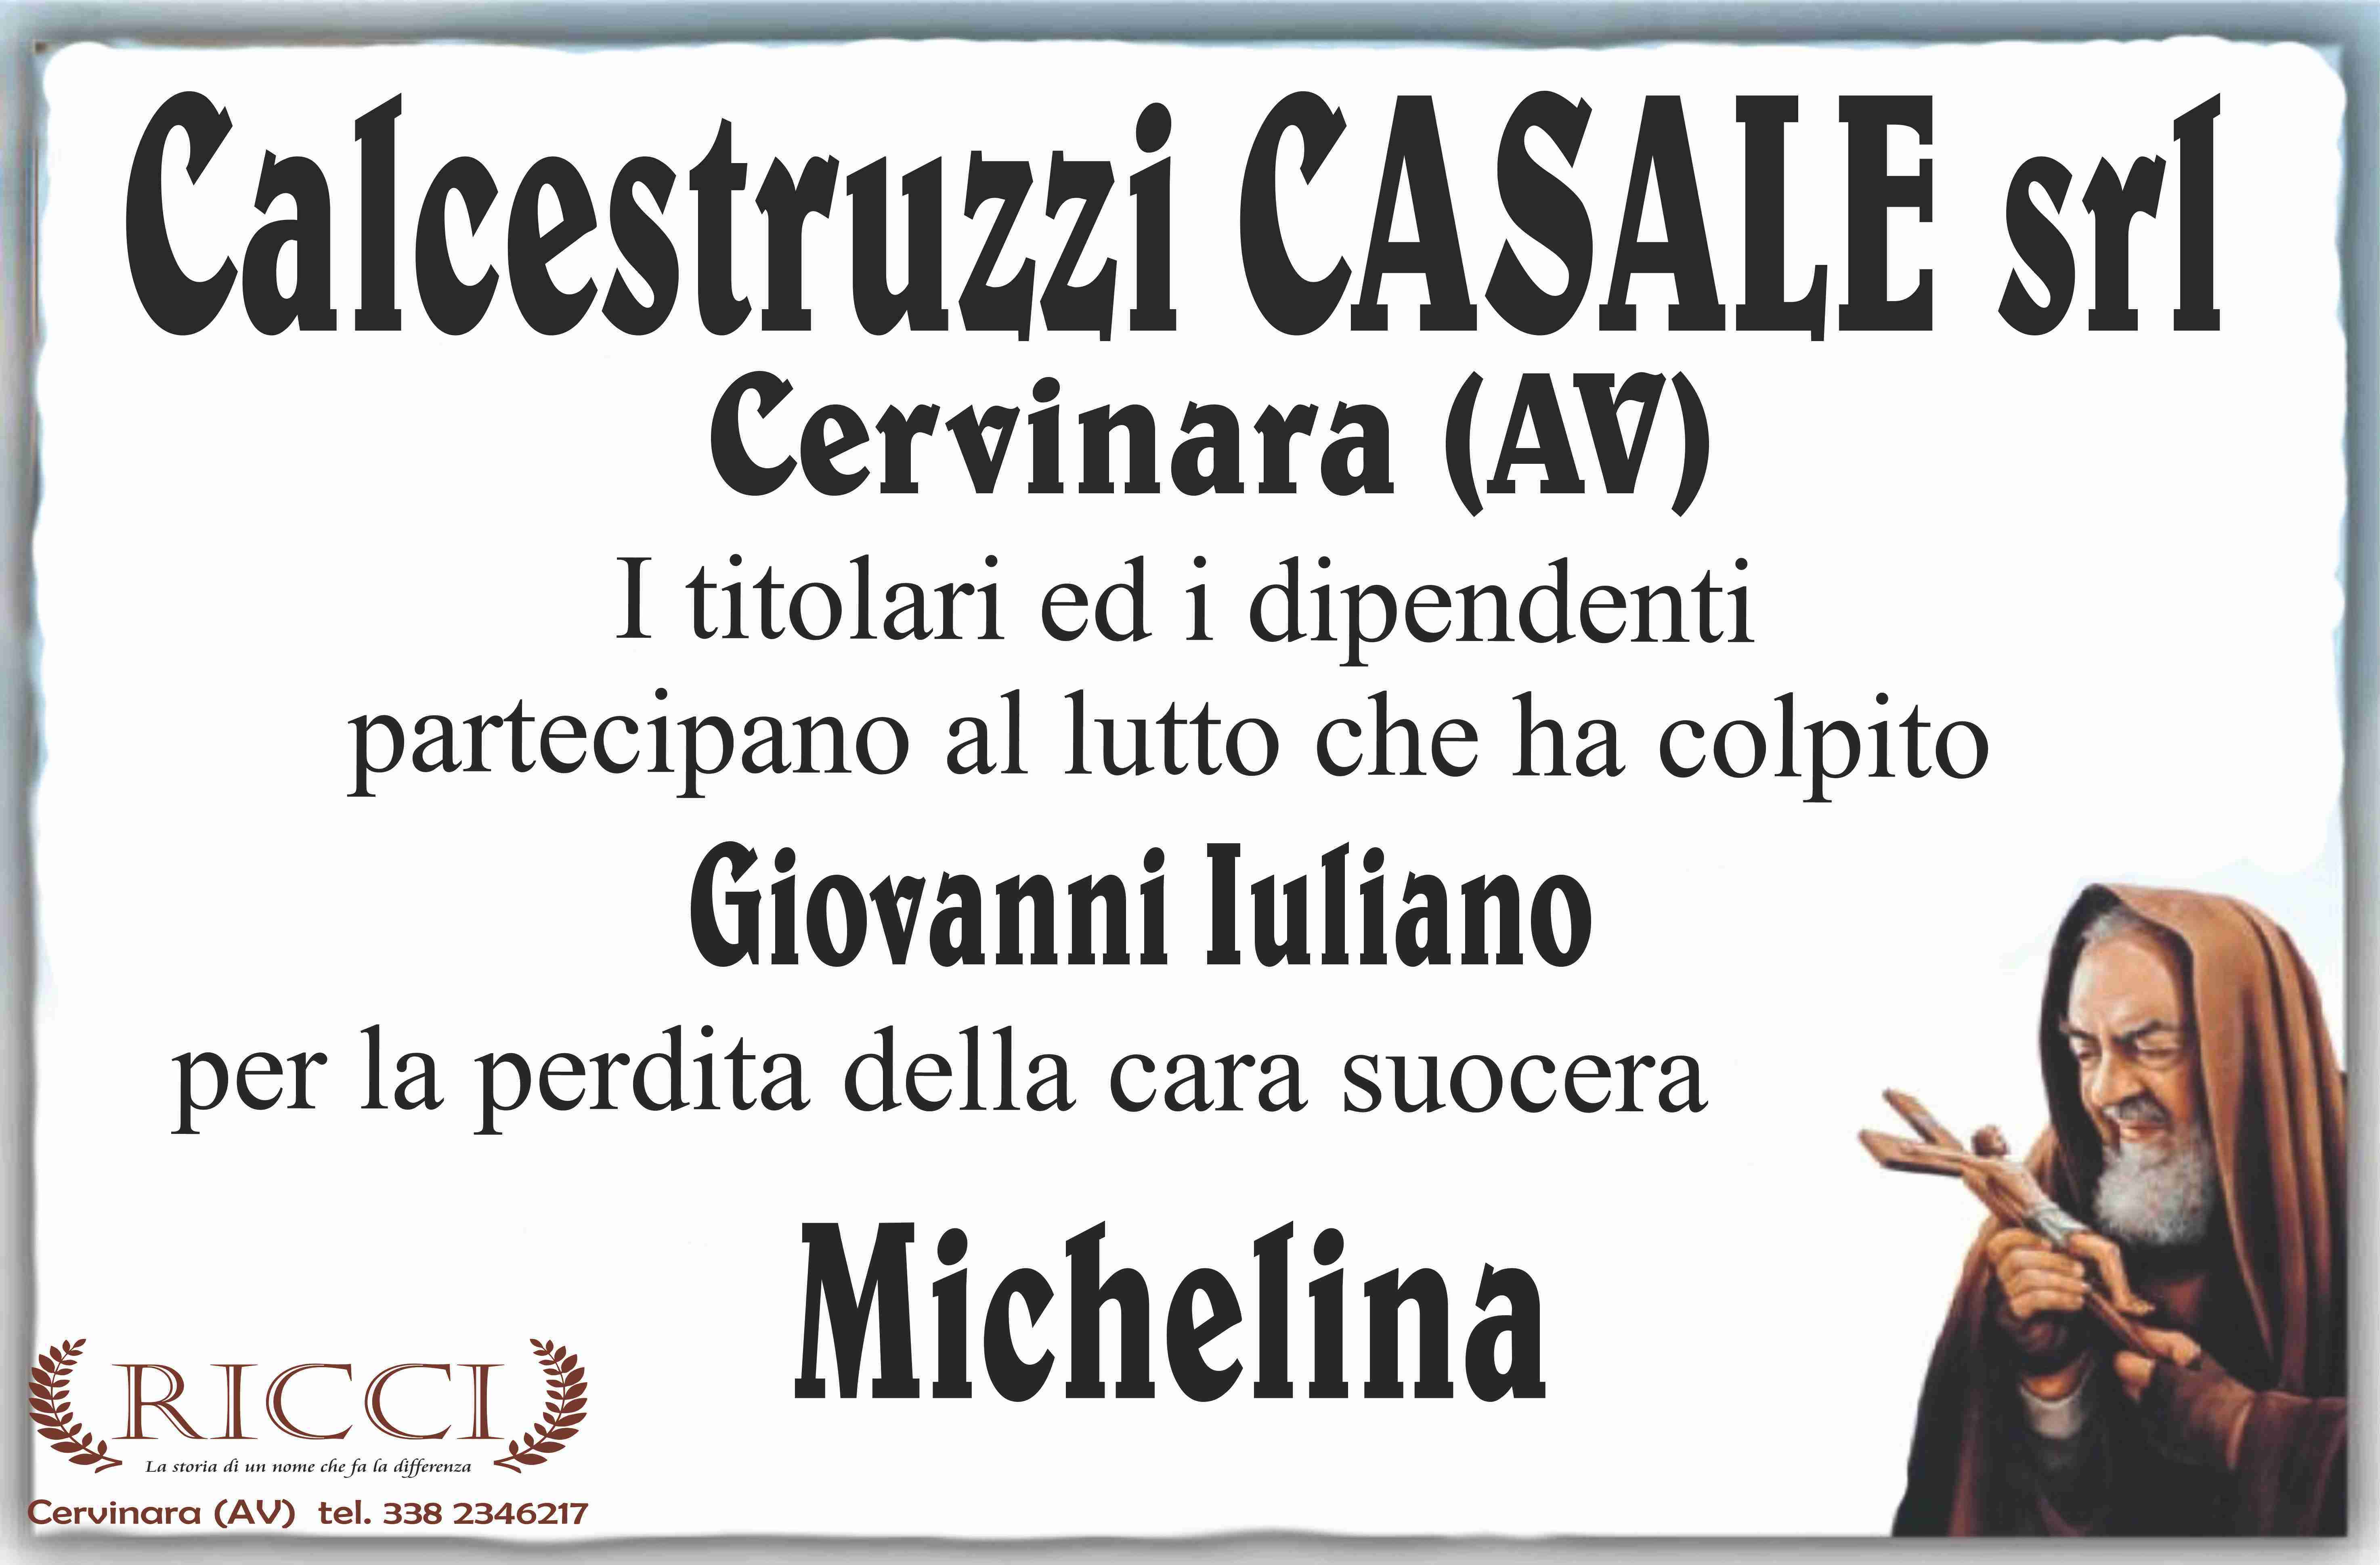 Michelina Gallo